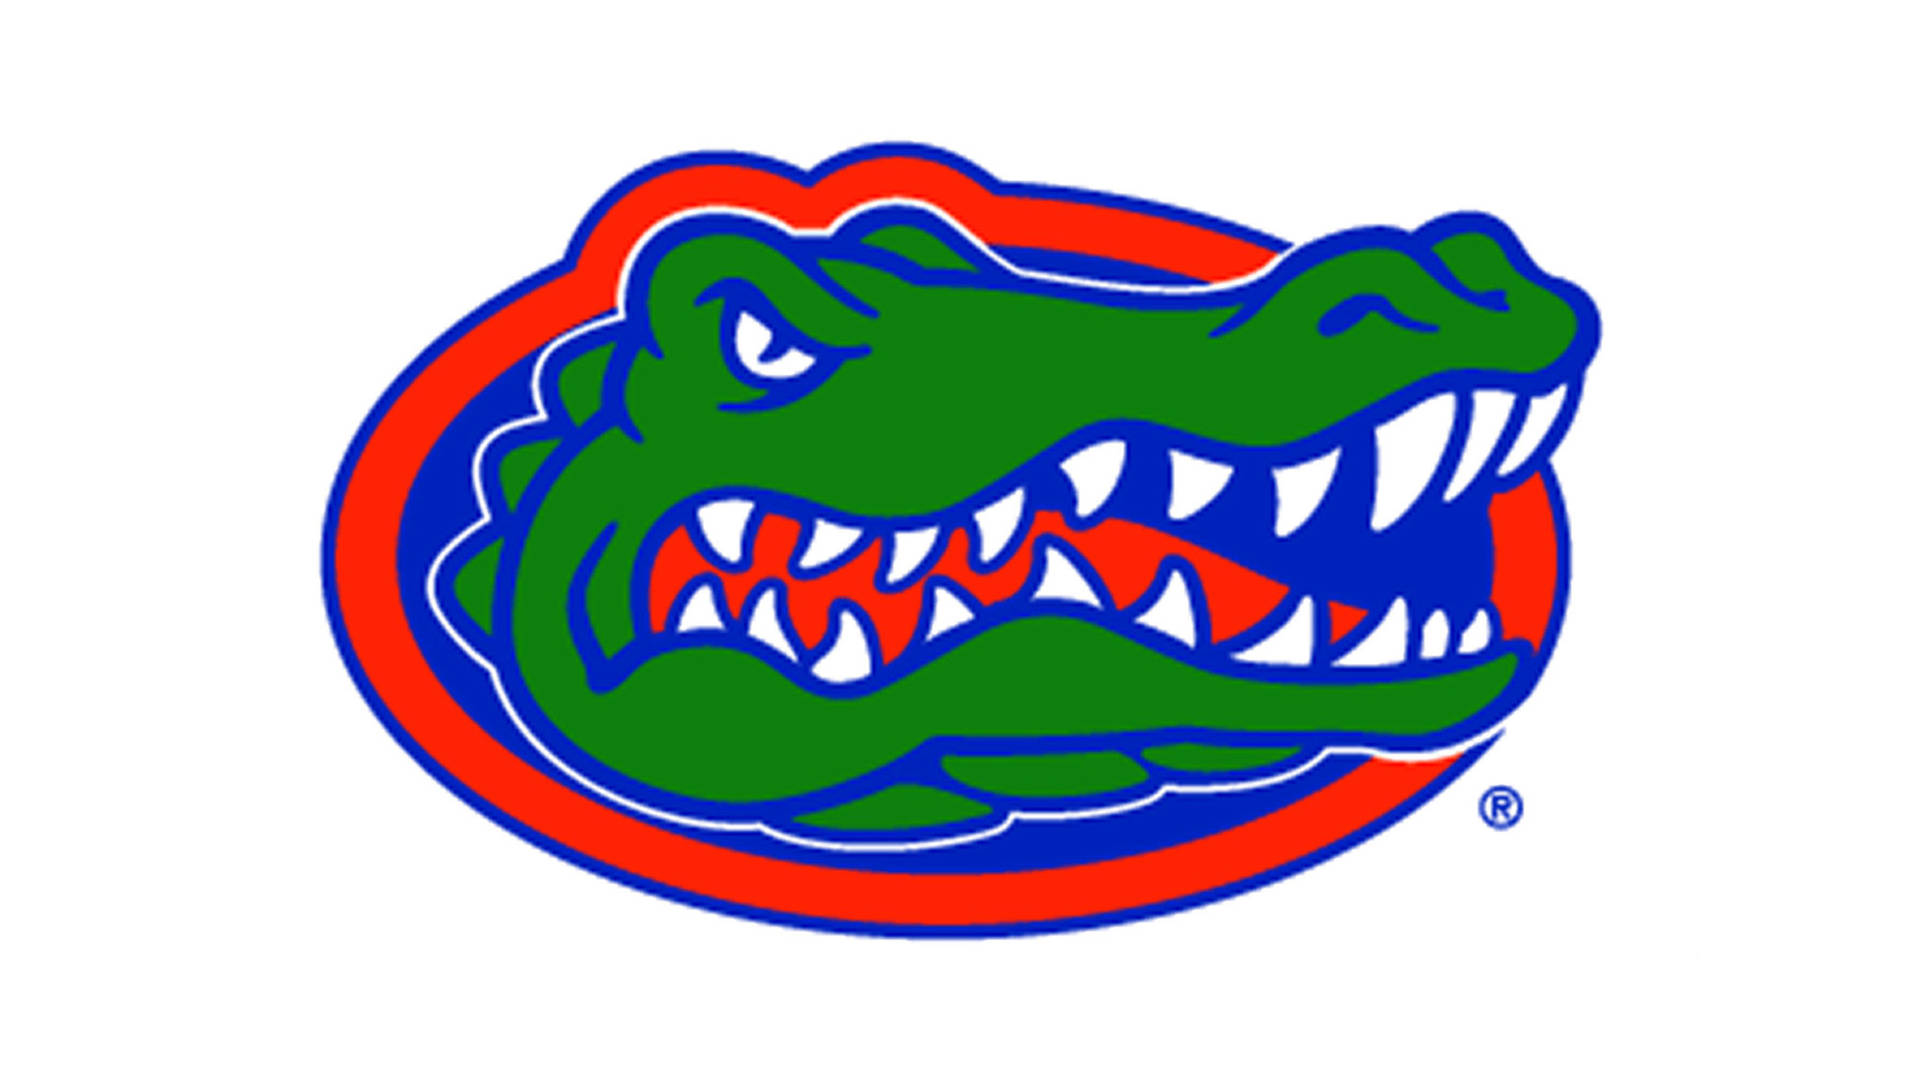 Logotipodel Alligator De La Universidad De Florida Gators. Fondo de pantalla